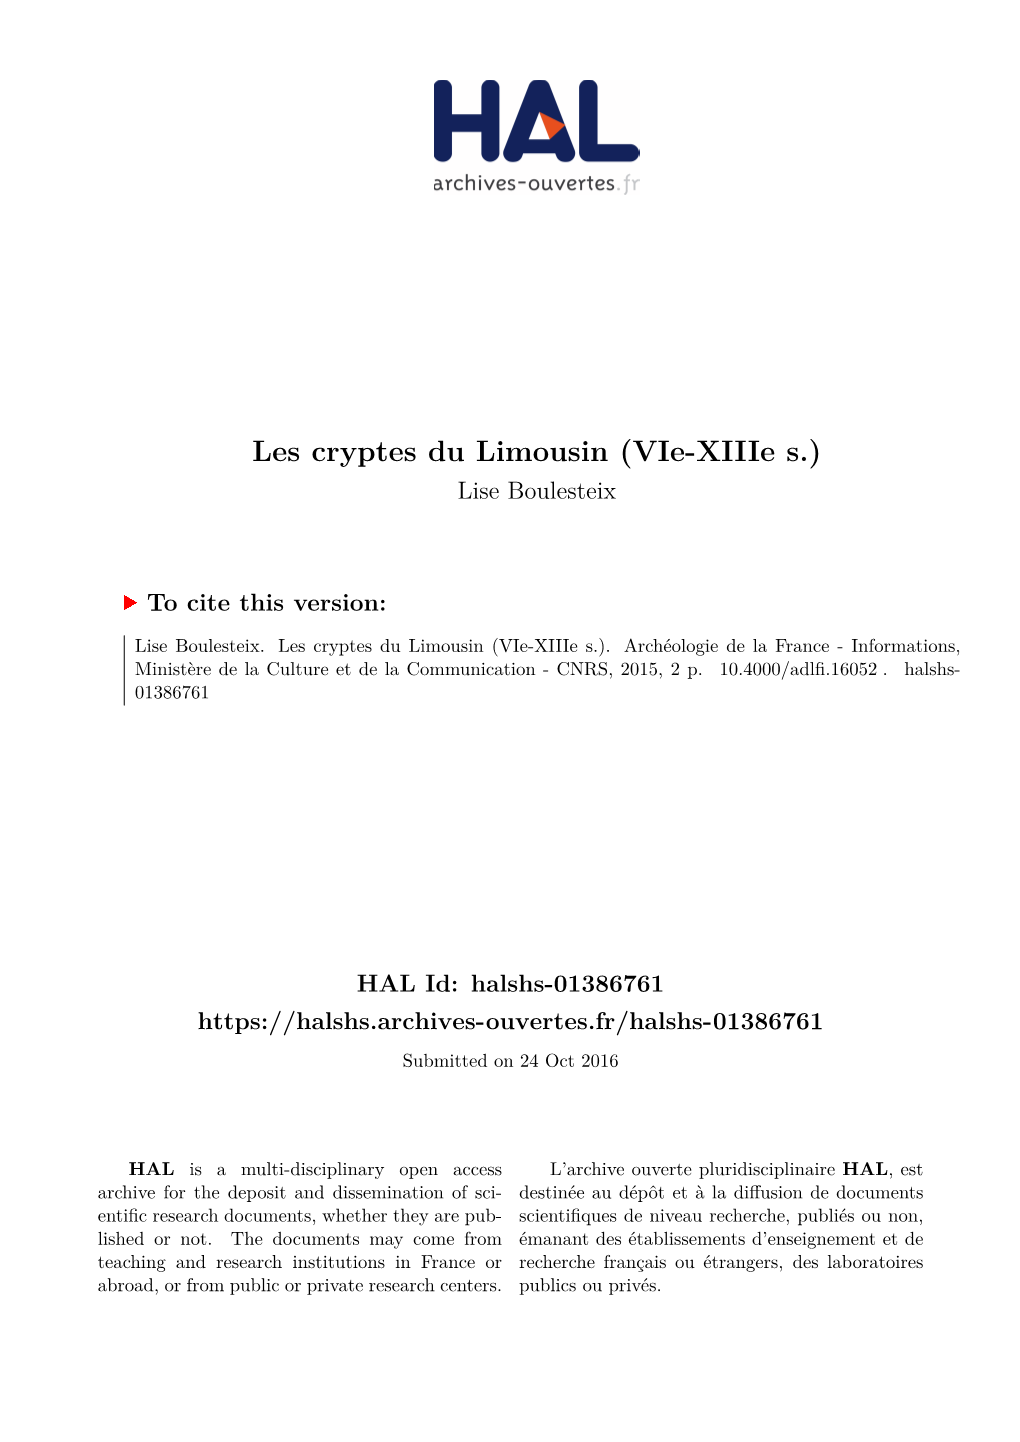 Les Cryptes Du Limousin (Vie-Xiiie S.) Lise Boulesteix